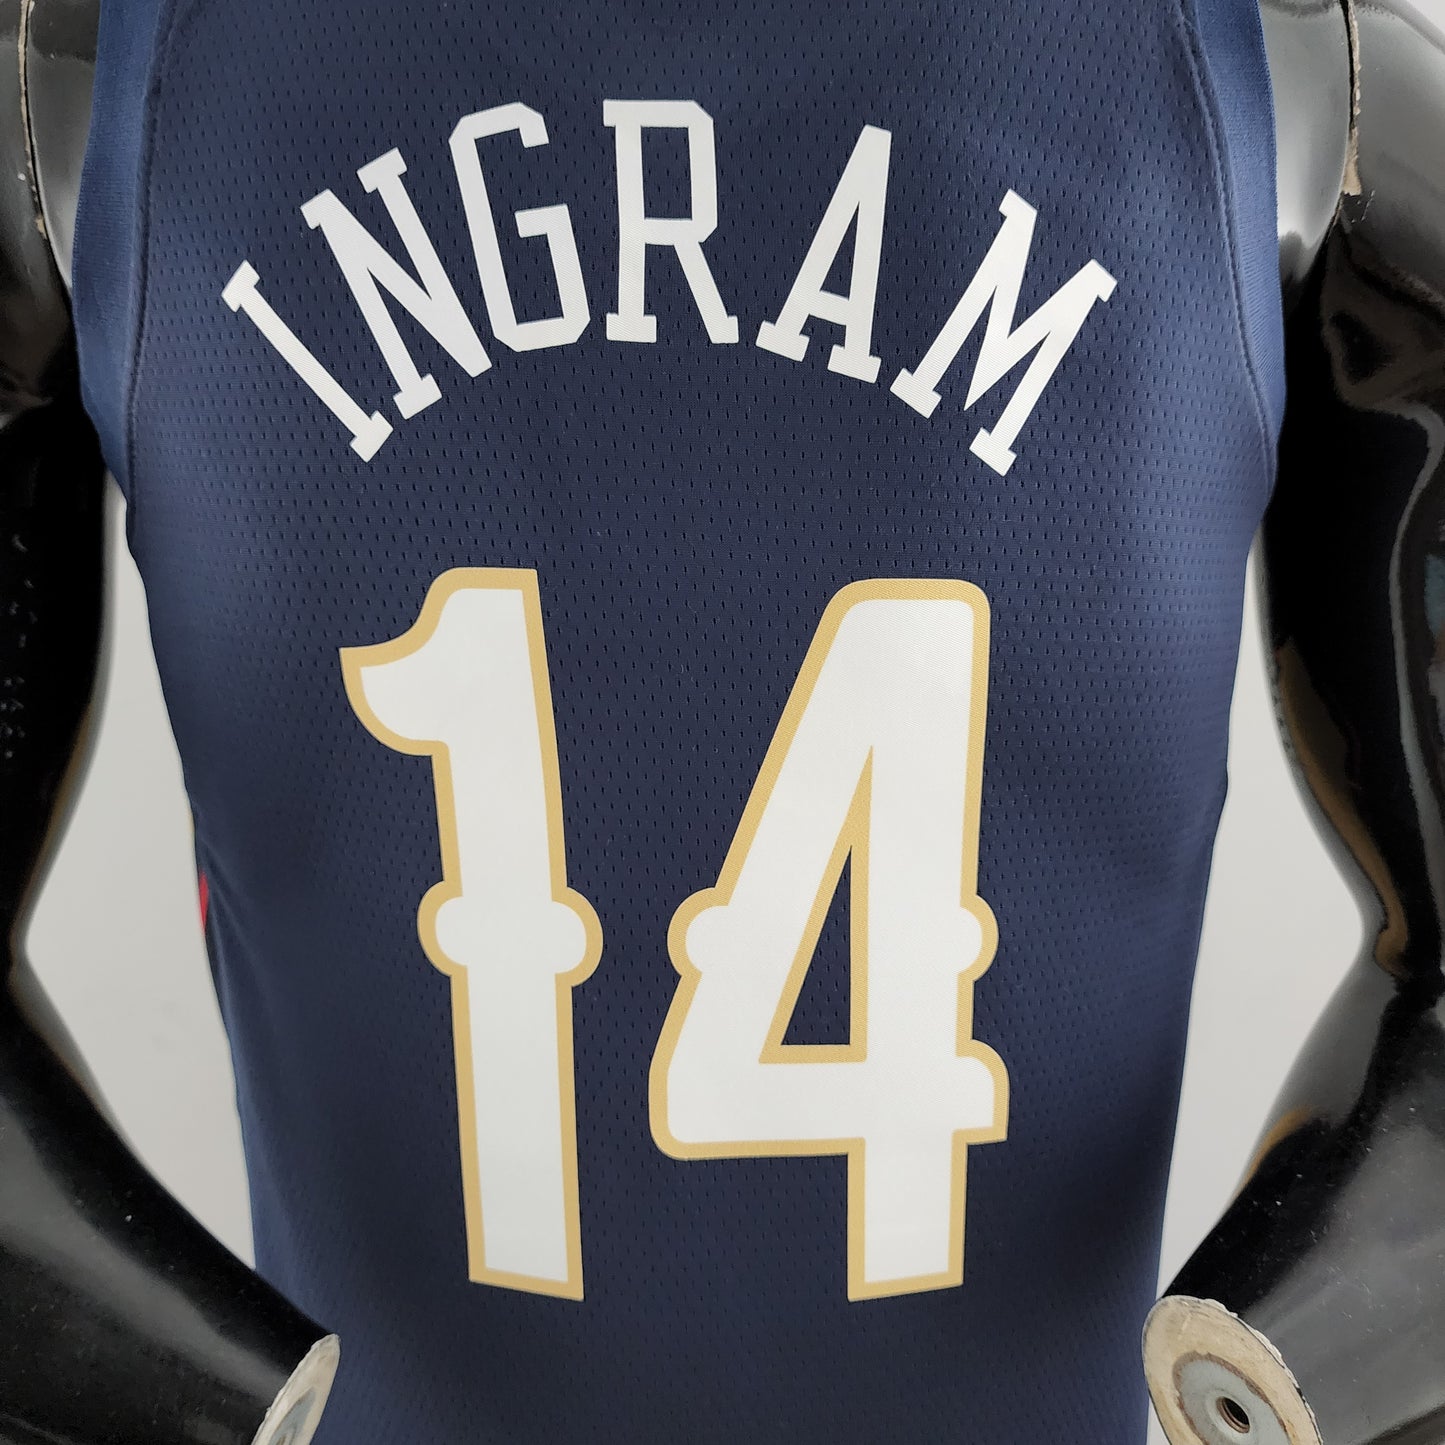 NBA New Orleans Pelicans 14 - INGRAM Azul Escuro